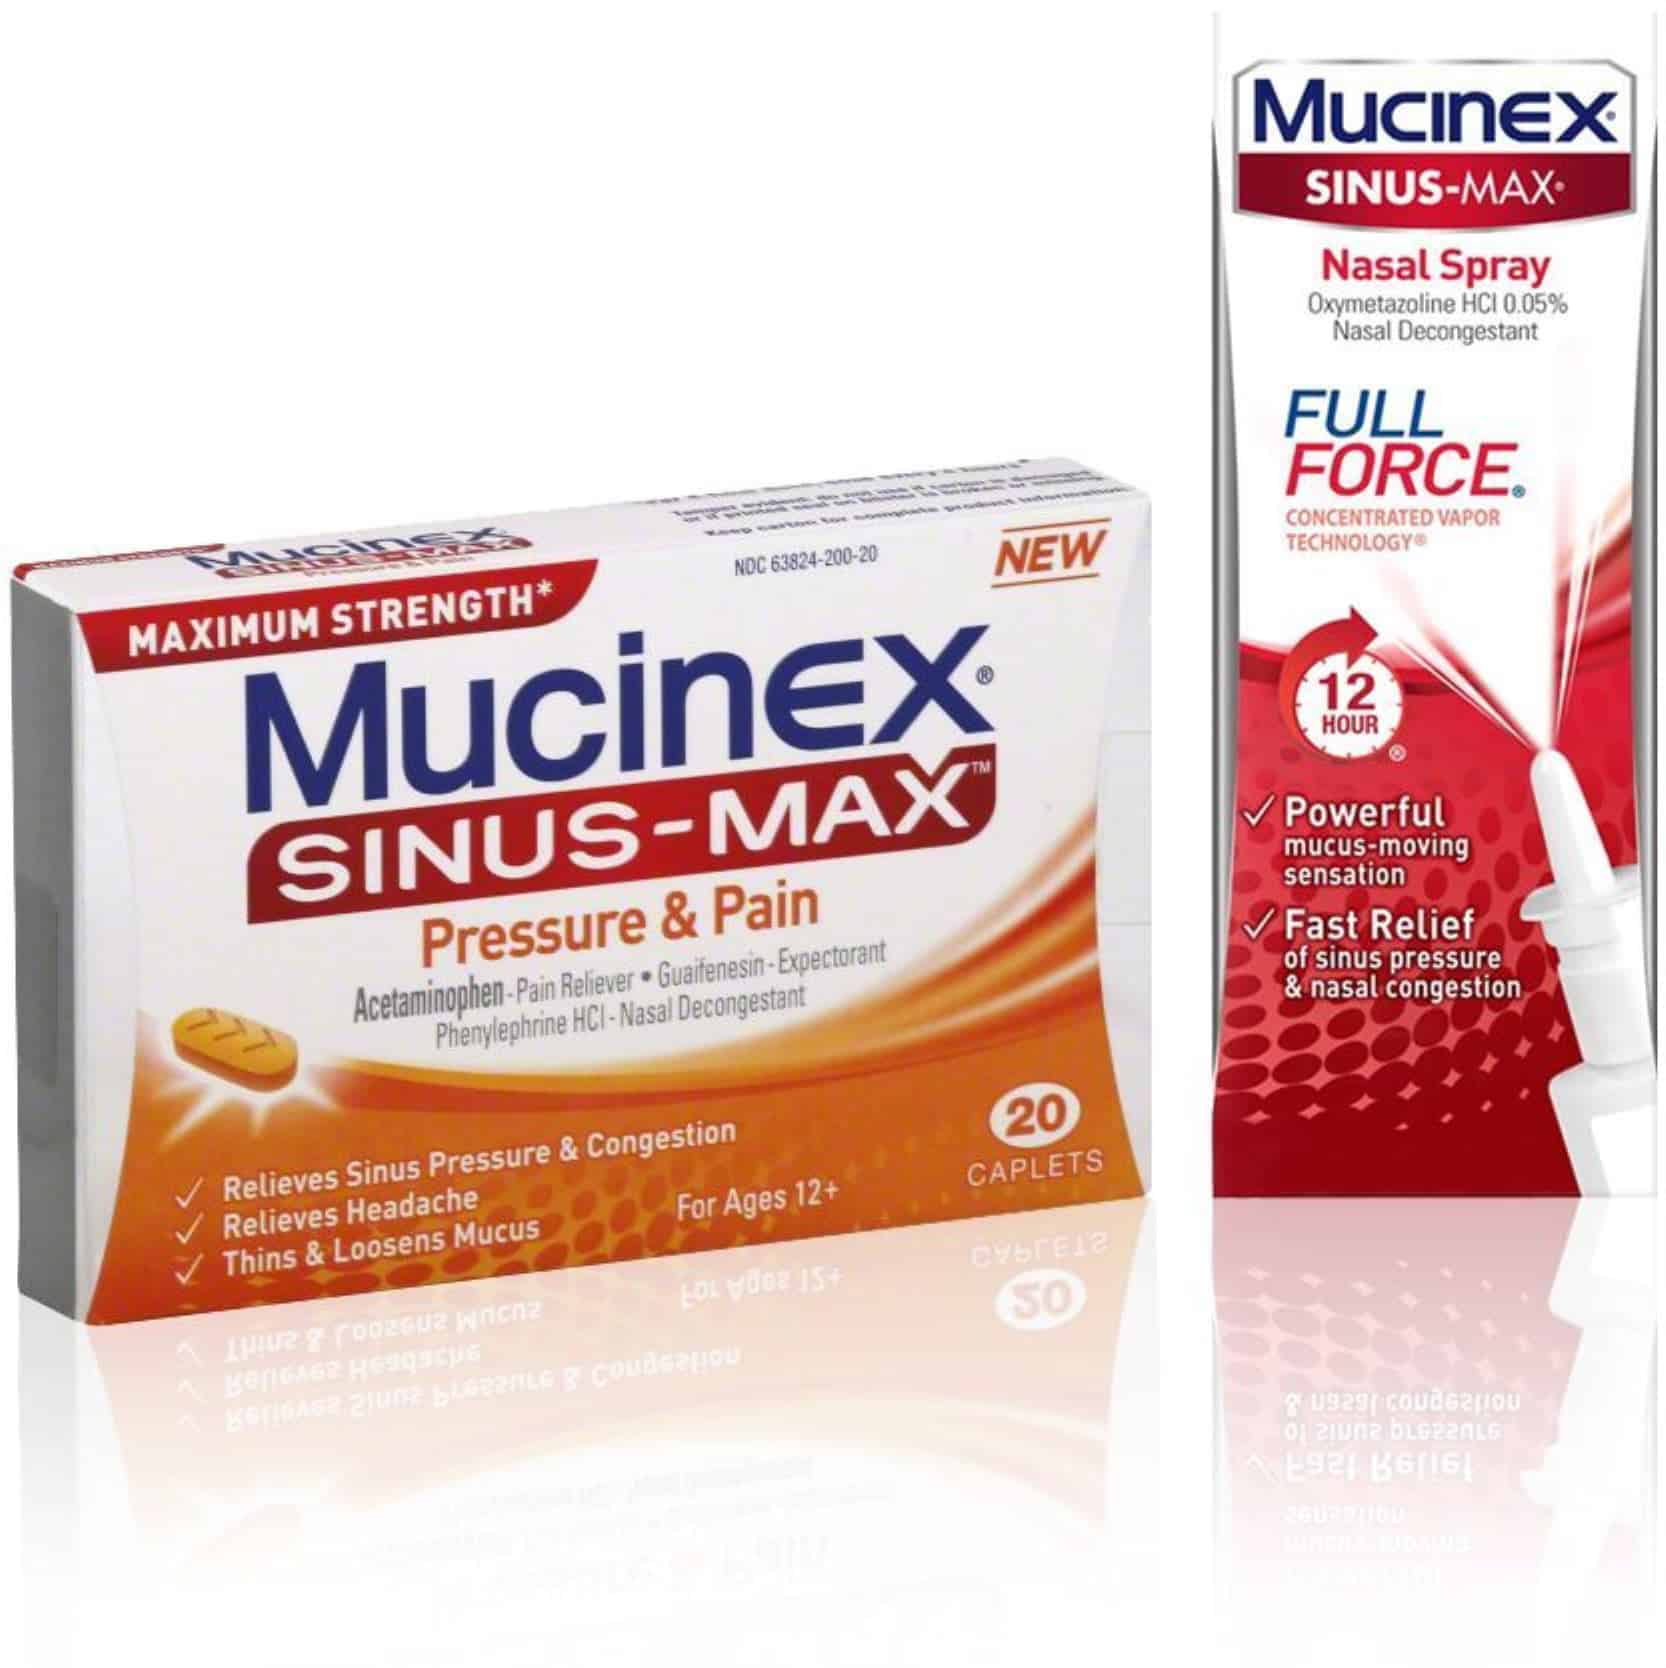 Mucinex Mucinex Sinus